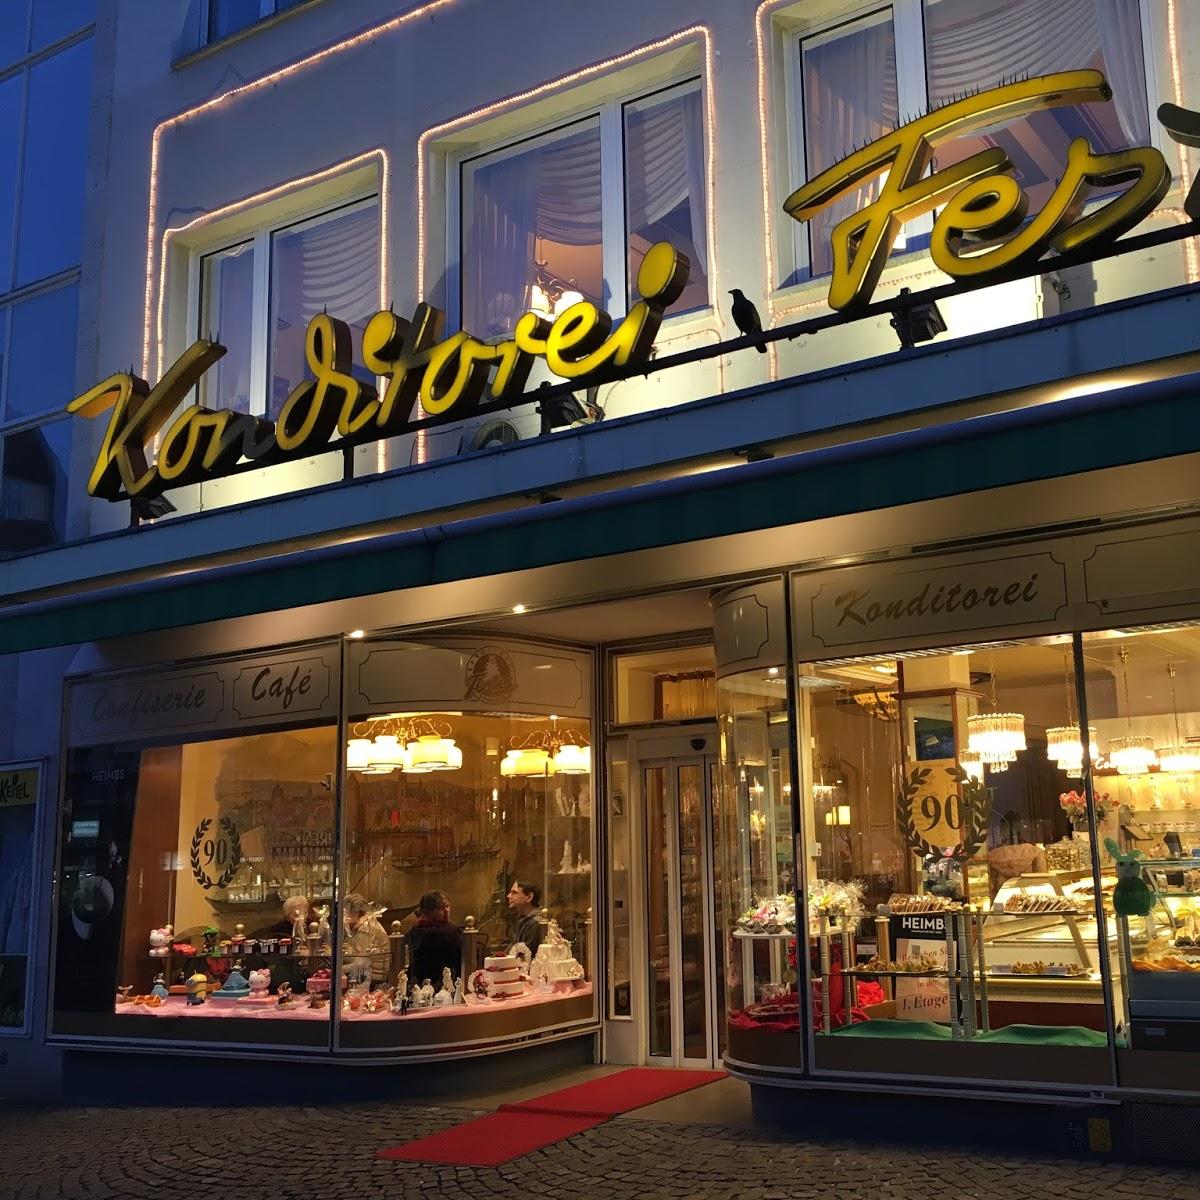 Restaurant "Konditorei Fester Hellmuth Fester GmbH & Co. KG" in Berlin